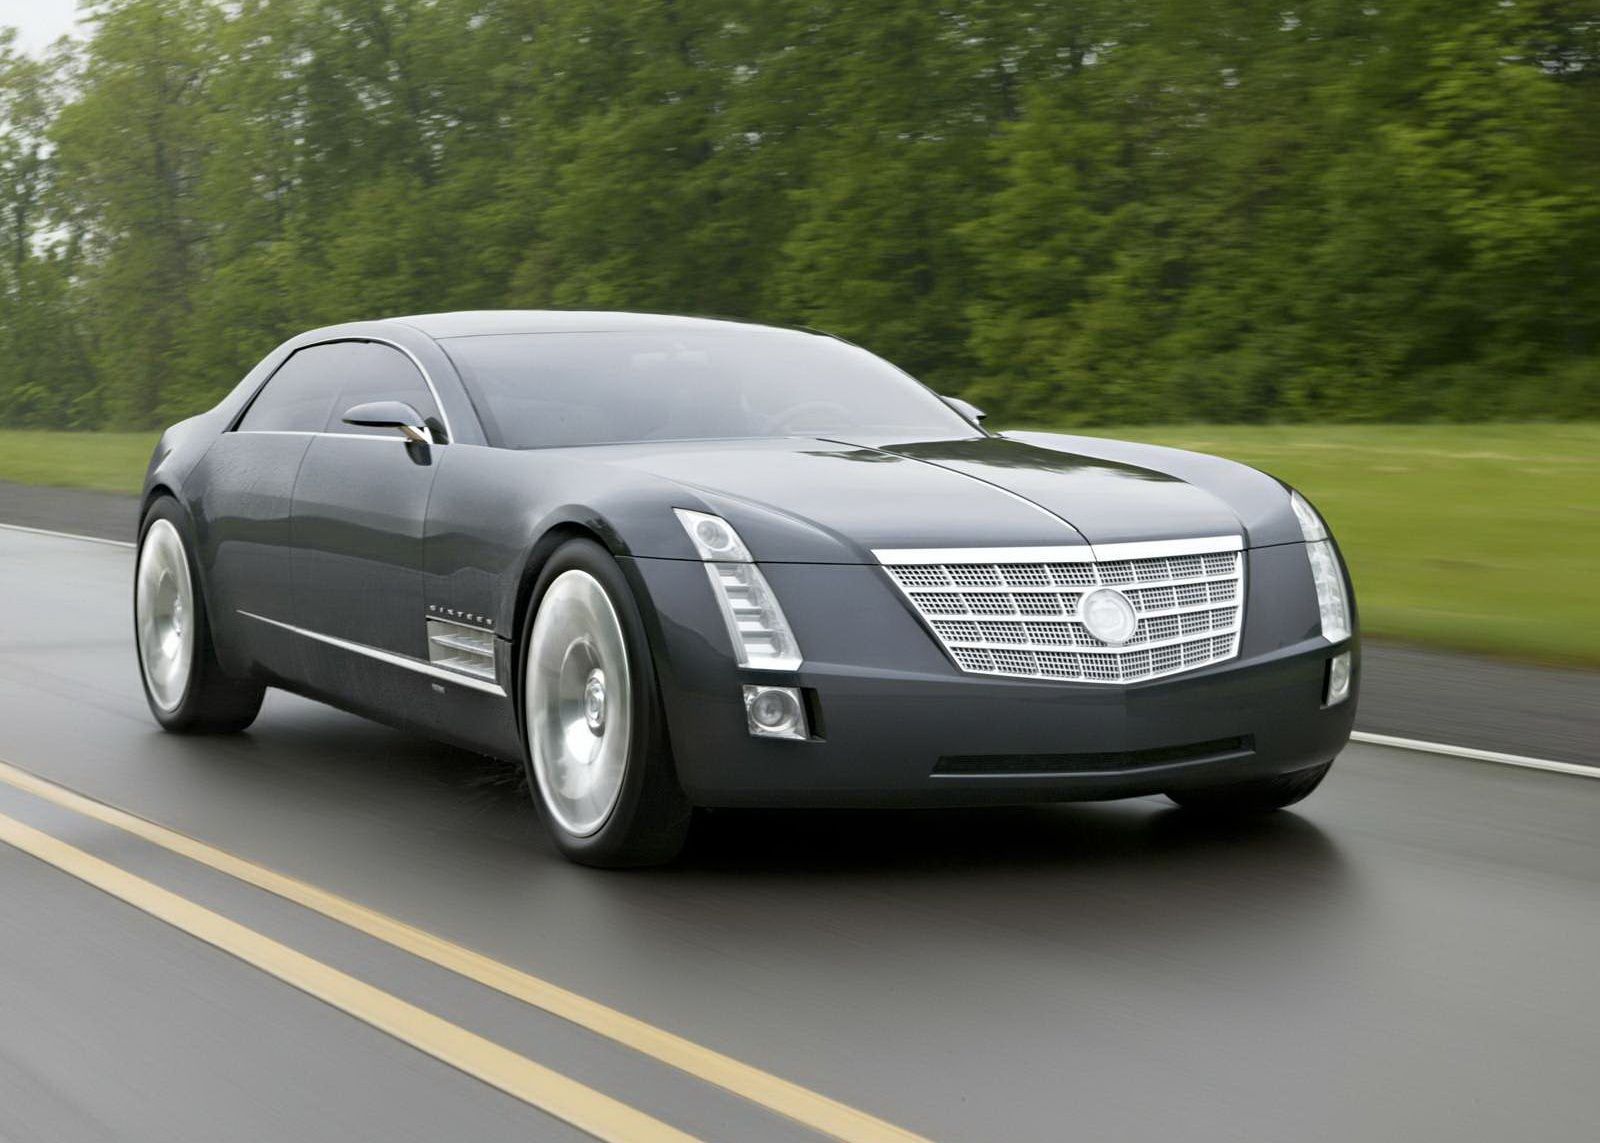 Cadillac slaví 115. výročí - vozy automobilky